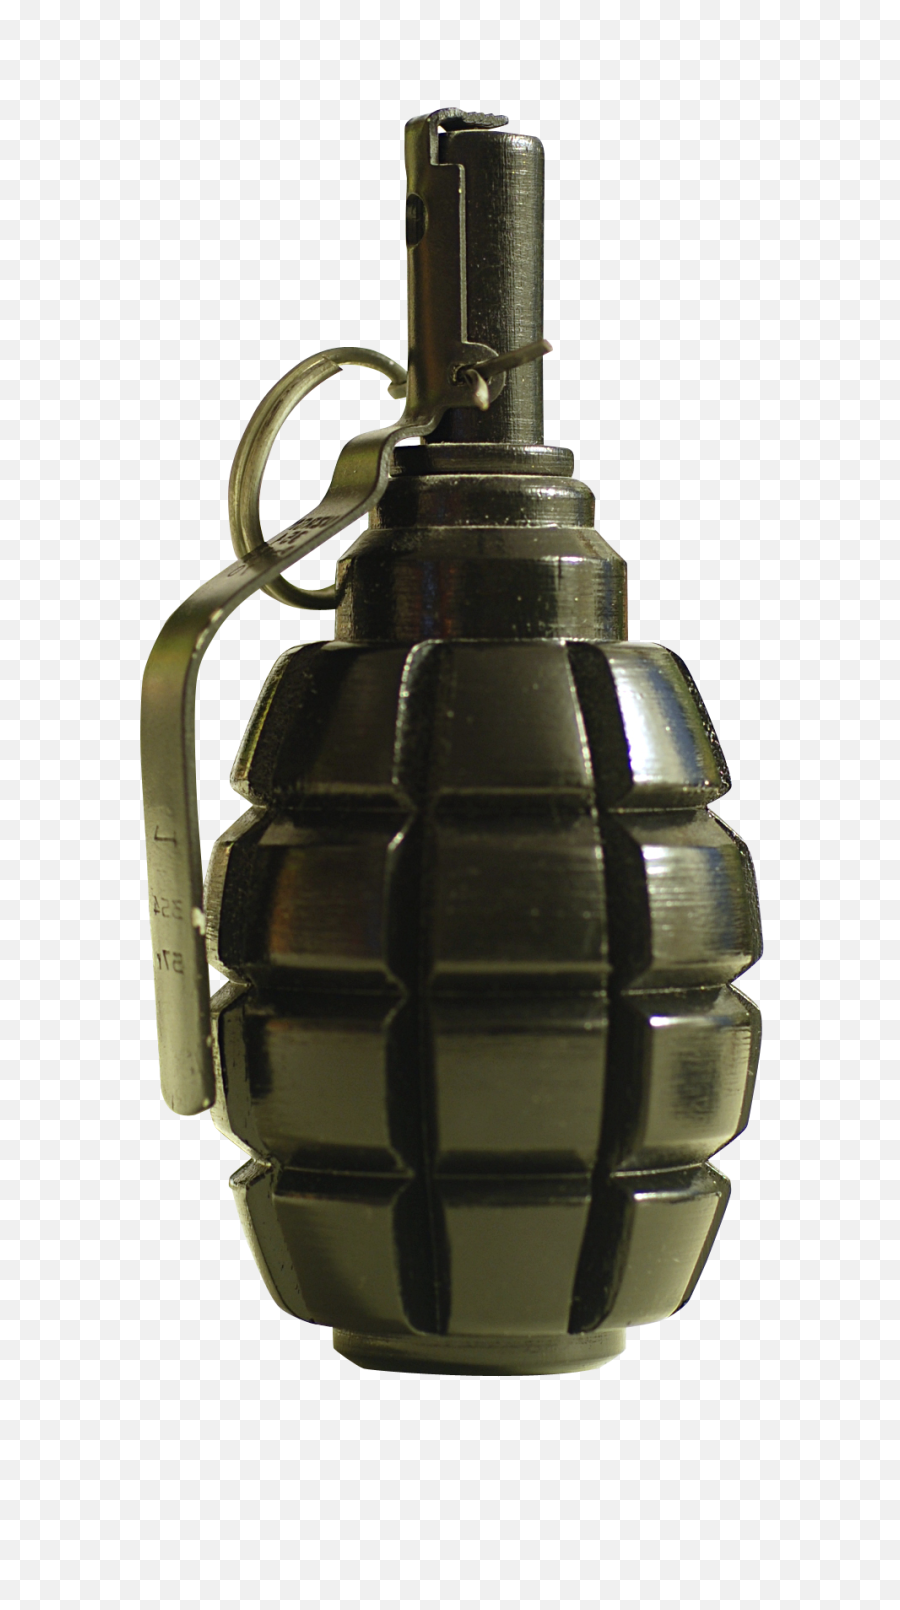 Hand Grenade Png Transparent Image - Hand Granade Png,Grenade Transparent Background